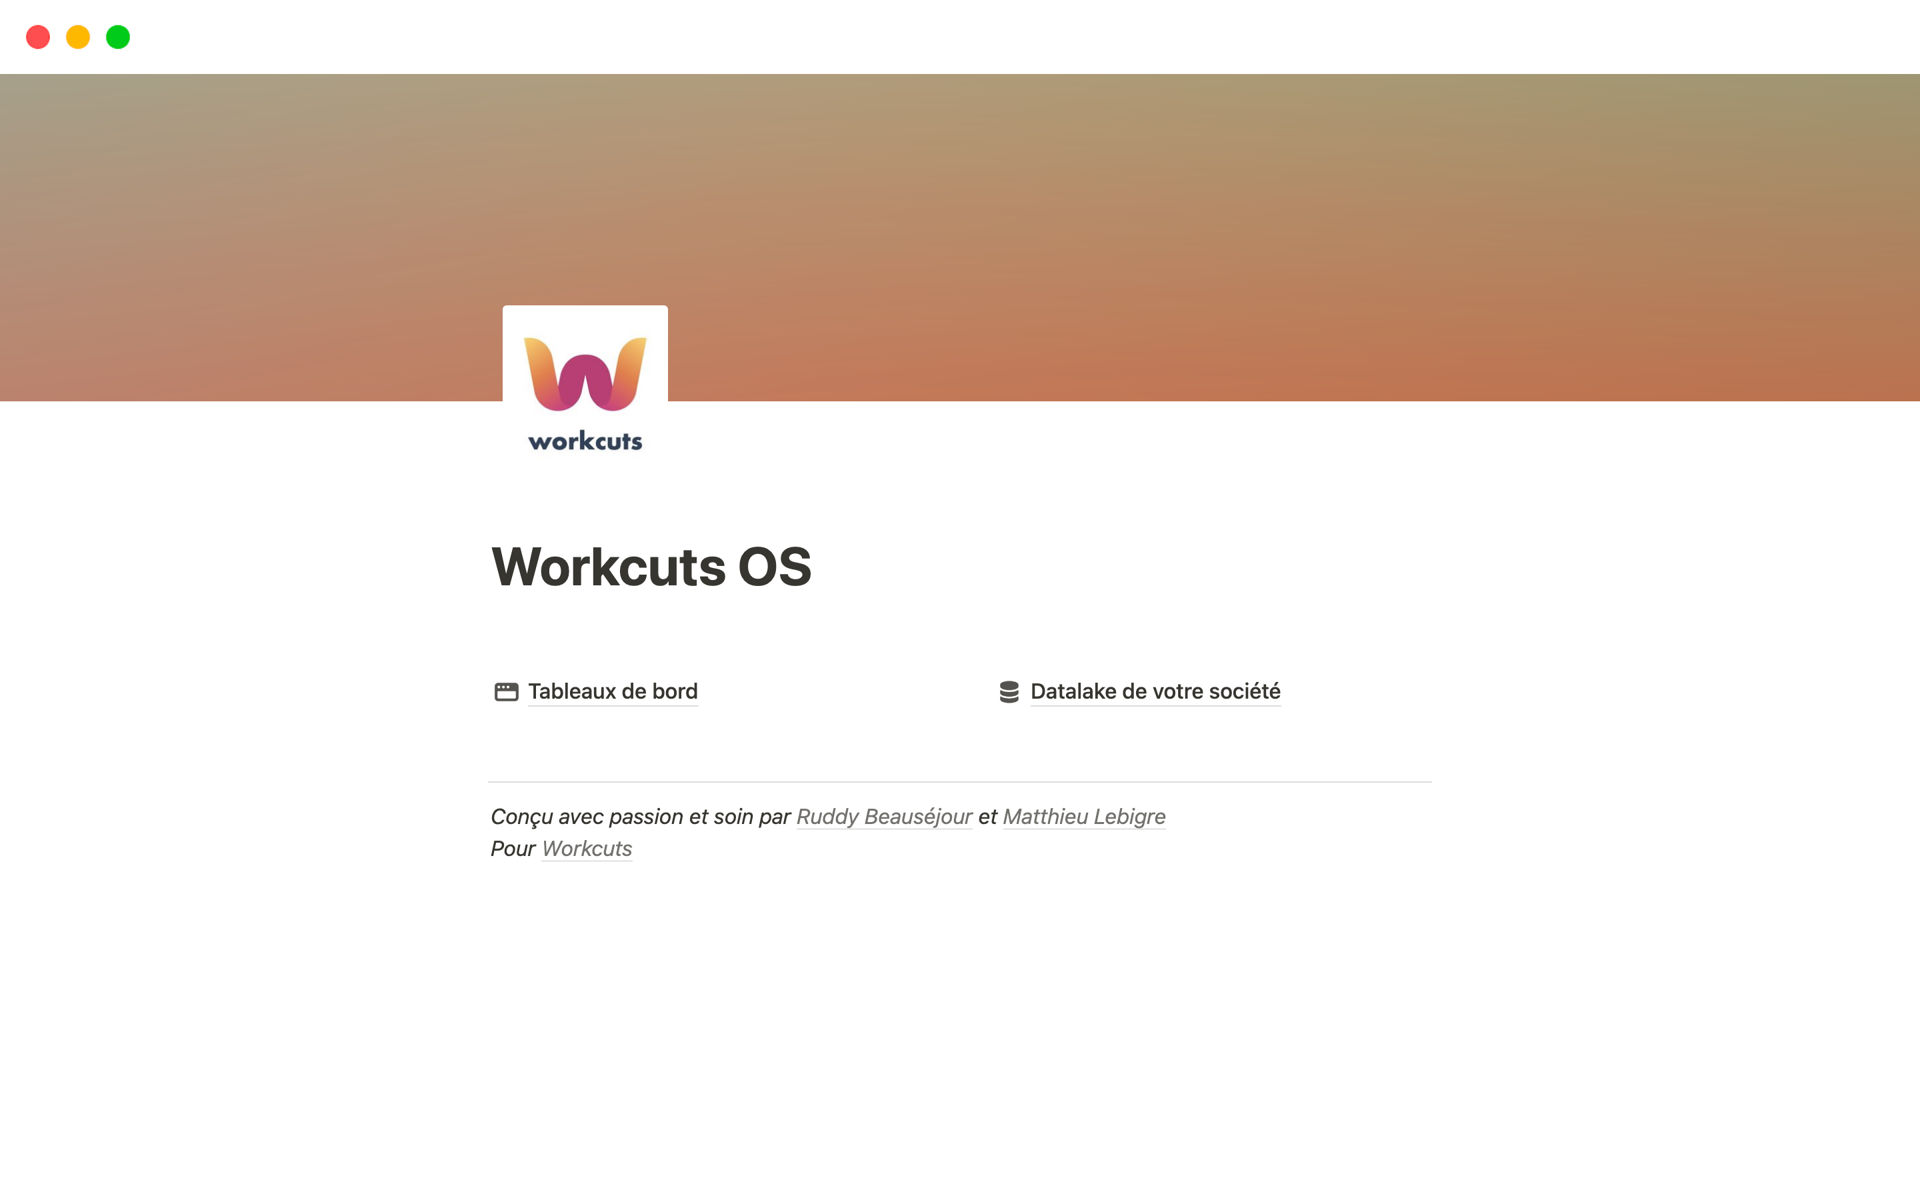 Vista previa de una plantilla para Workcuts OS